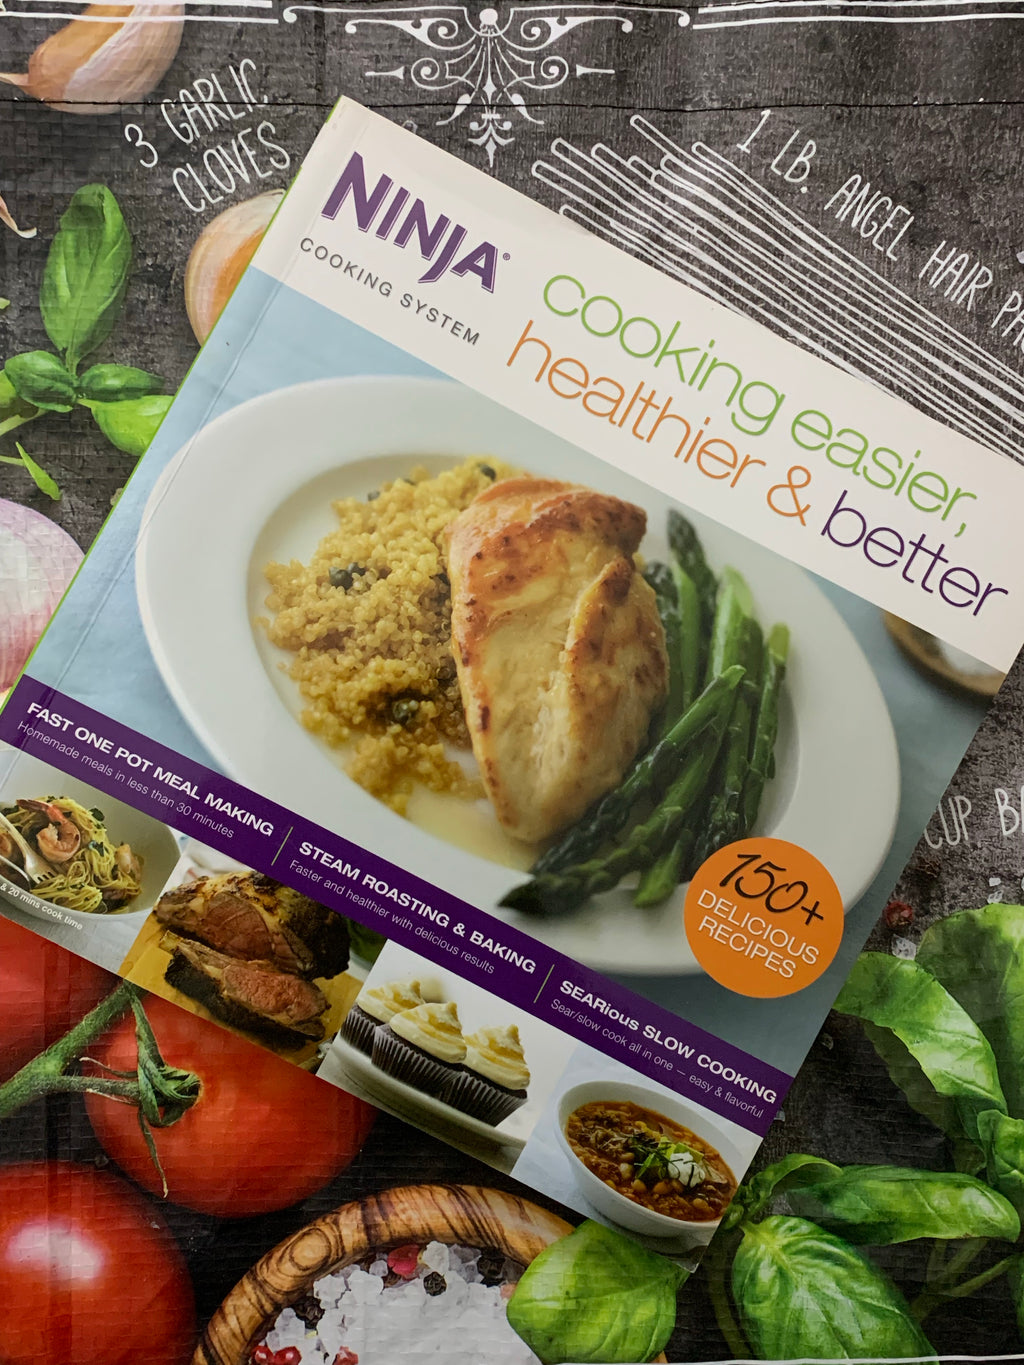 Ninja: Cooking Easier, Healthier & Better